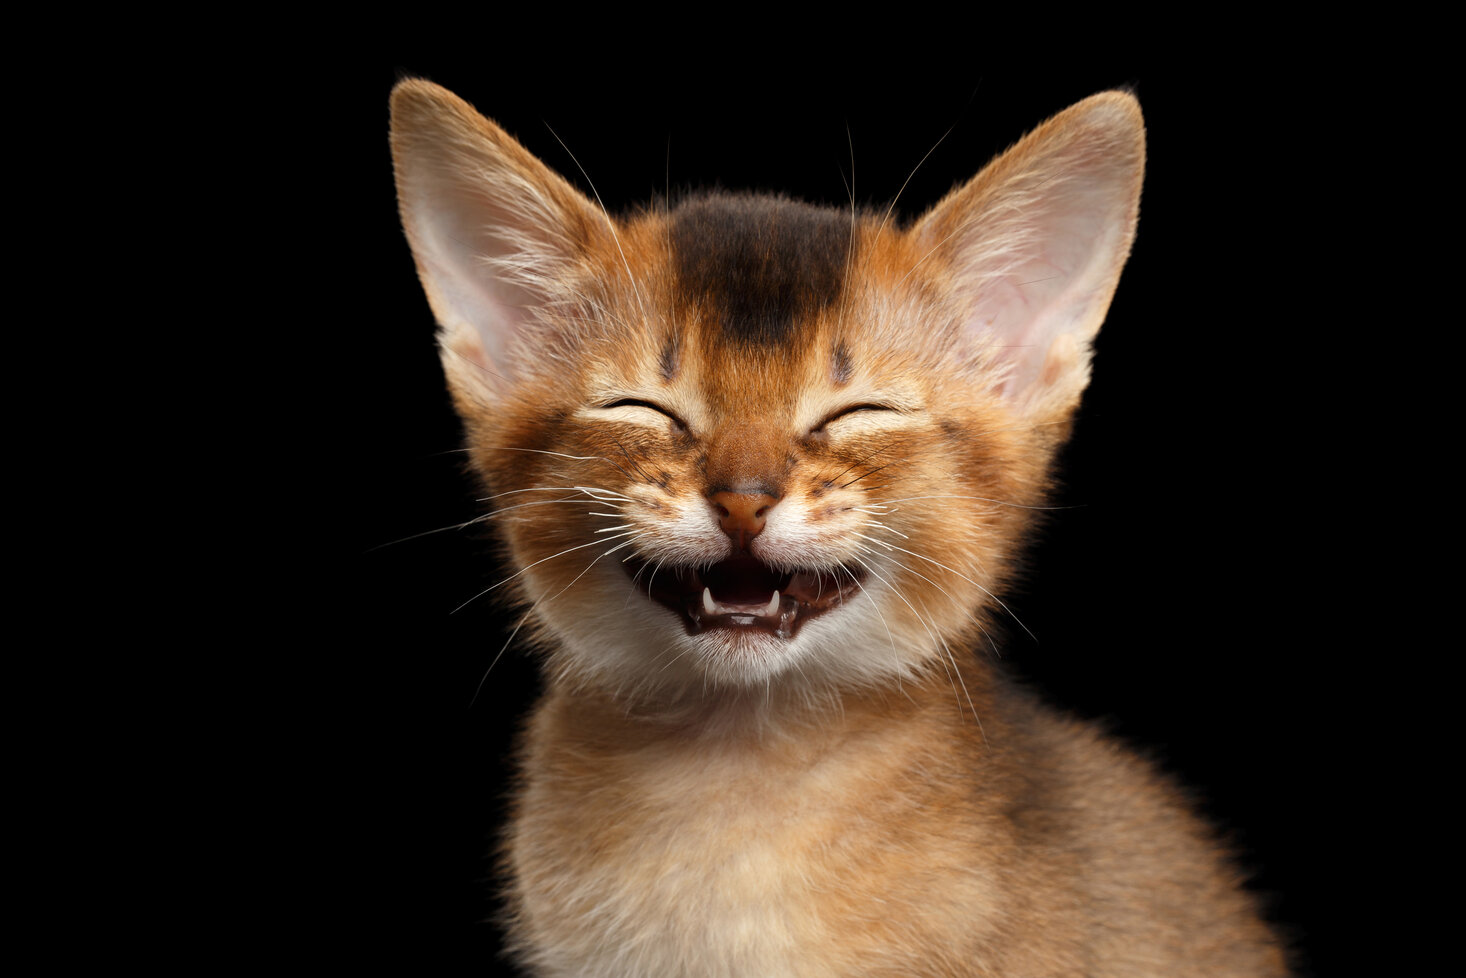 hebben katten gevoel voor humor?